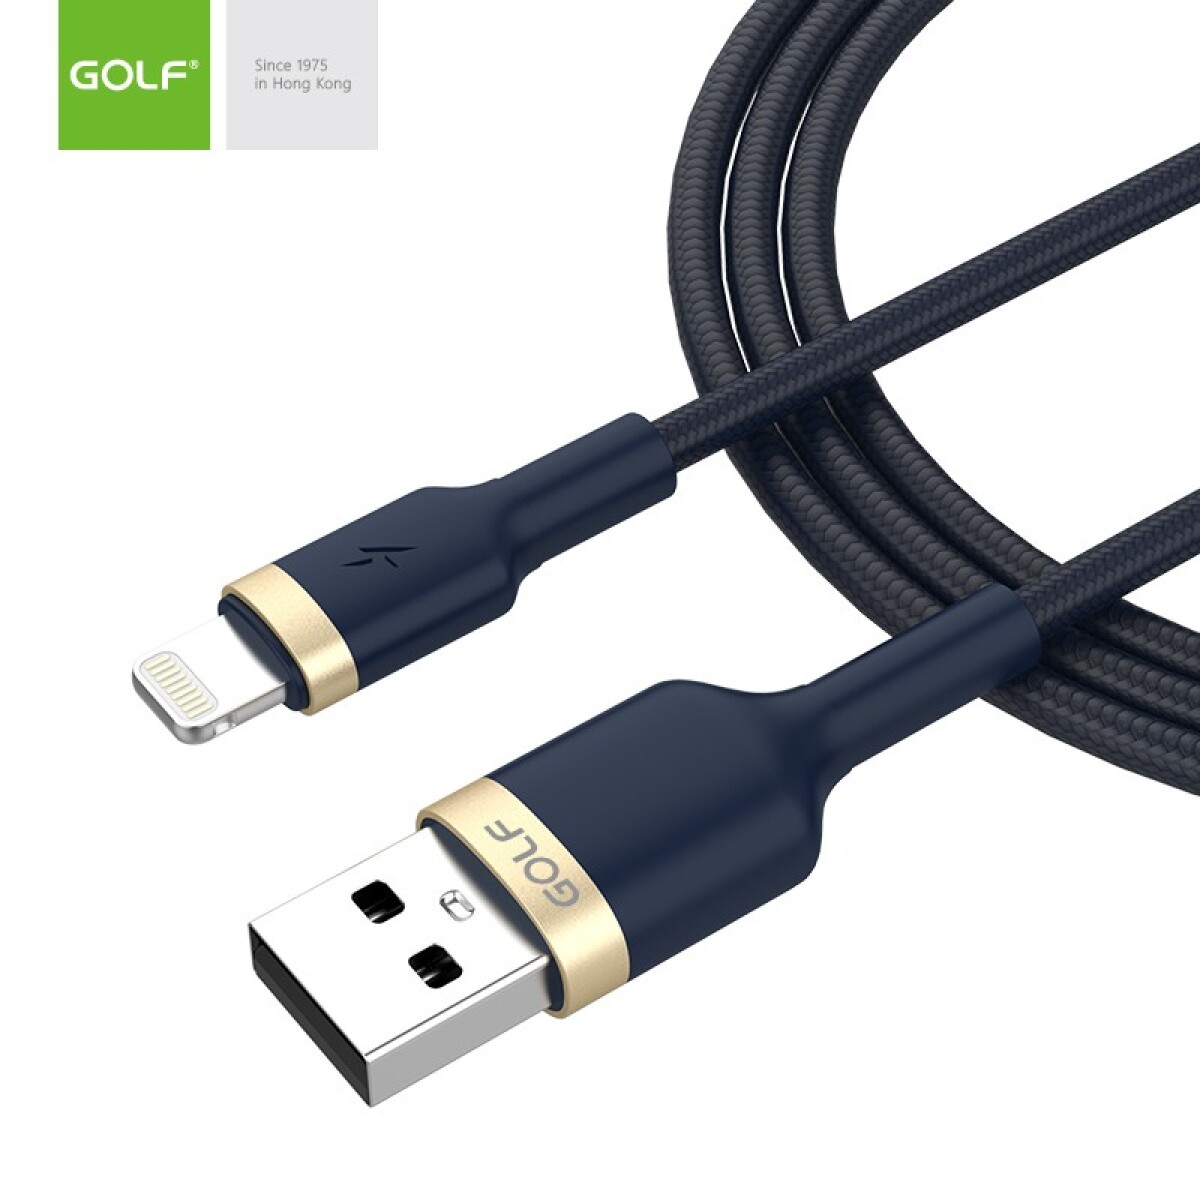 Cable Compatible con iPhone Aprobado 1 Metro Golf - Azul Petróleo 